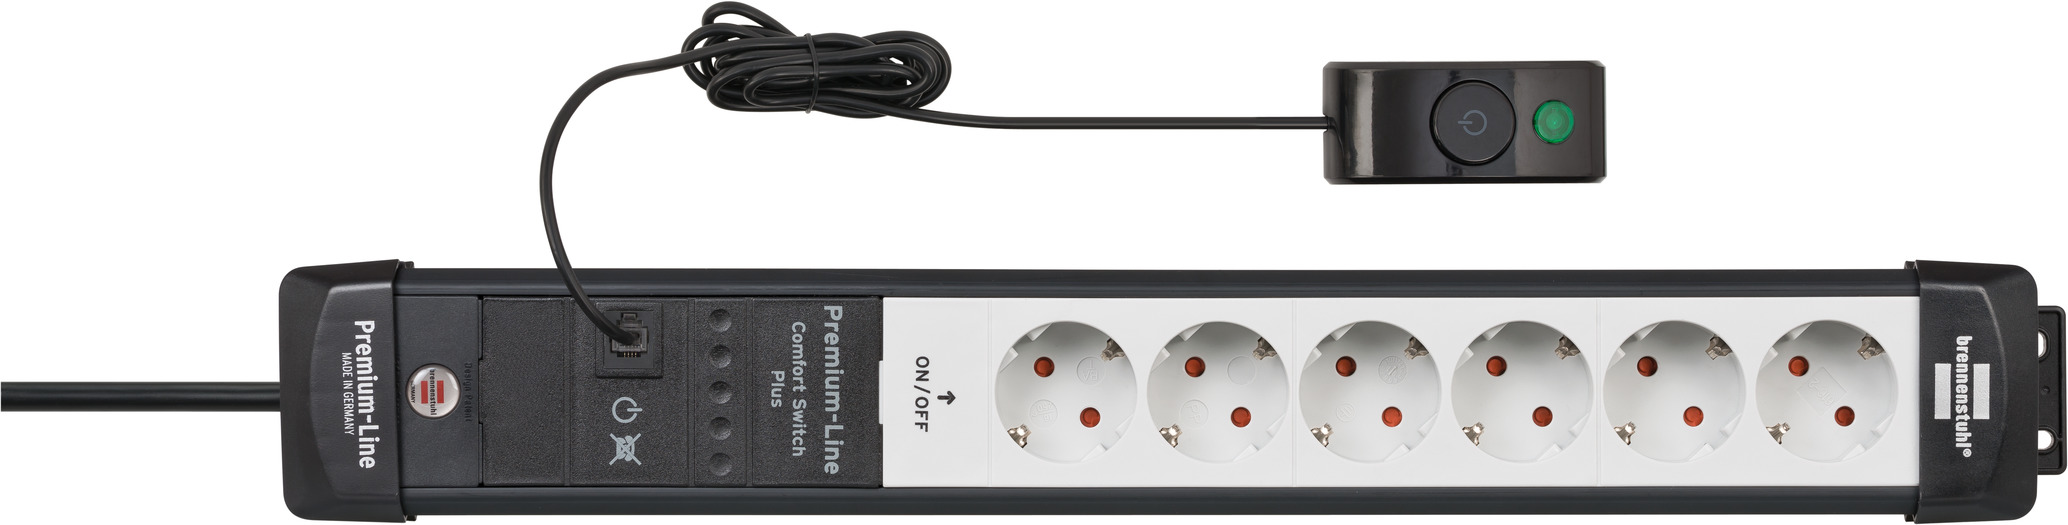 Regleta Eco-Line Comfort Switch EL CSP 24 6-tomas blanco 1,5m H05VV-F 3G1,5  2 permanentes, 4 con interruptor con interruptor manual/pedal